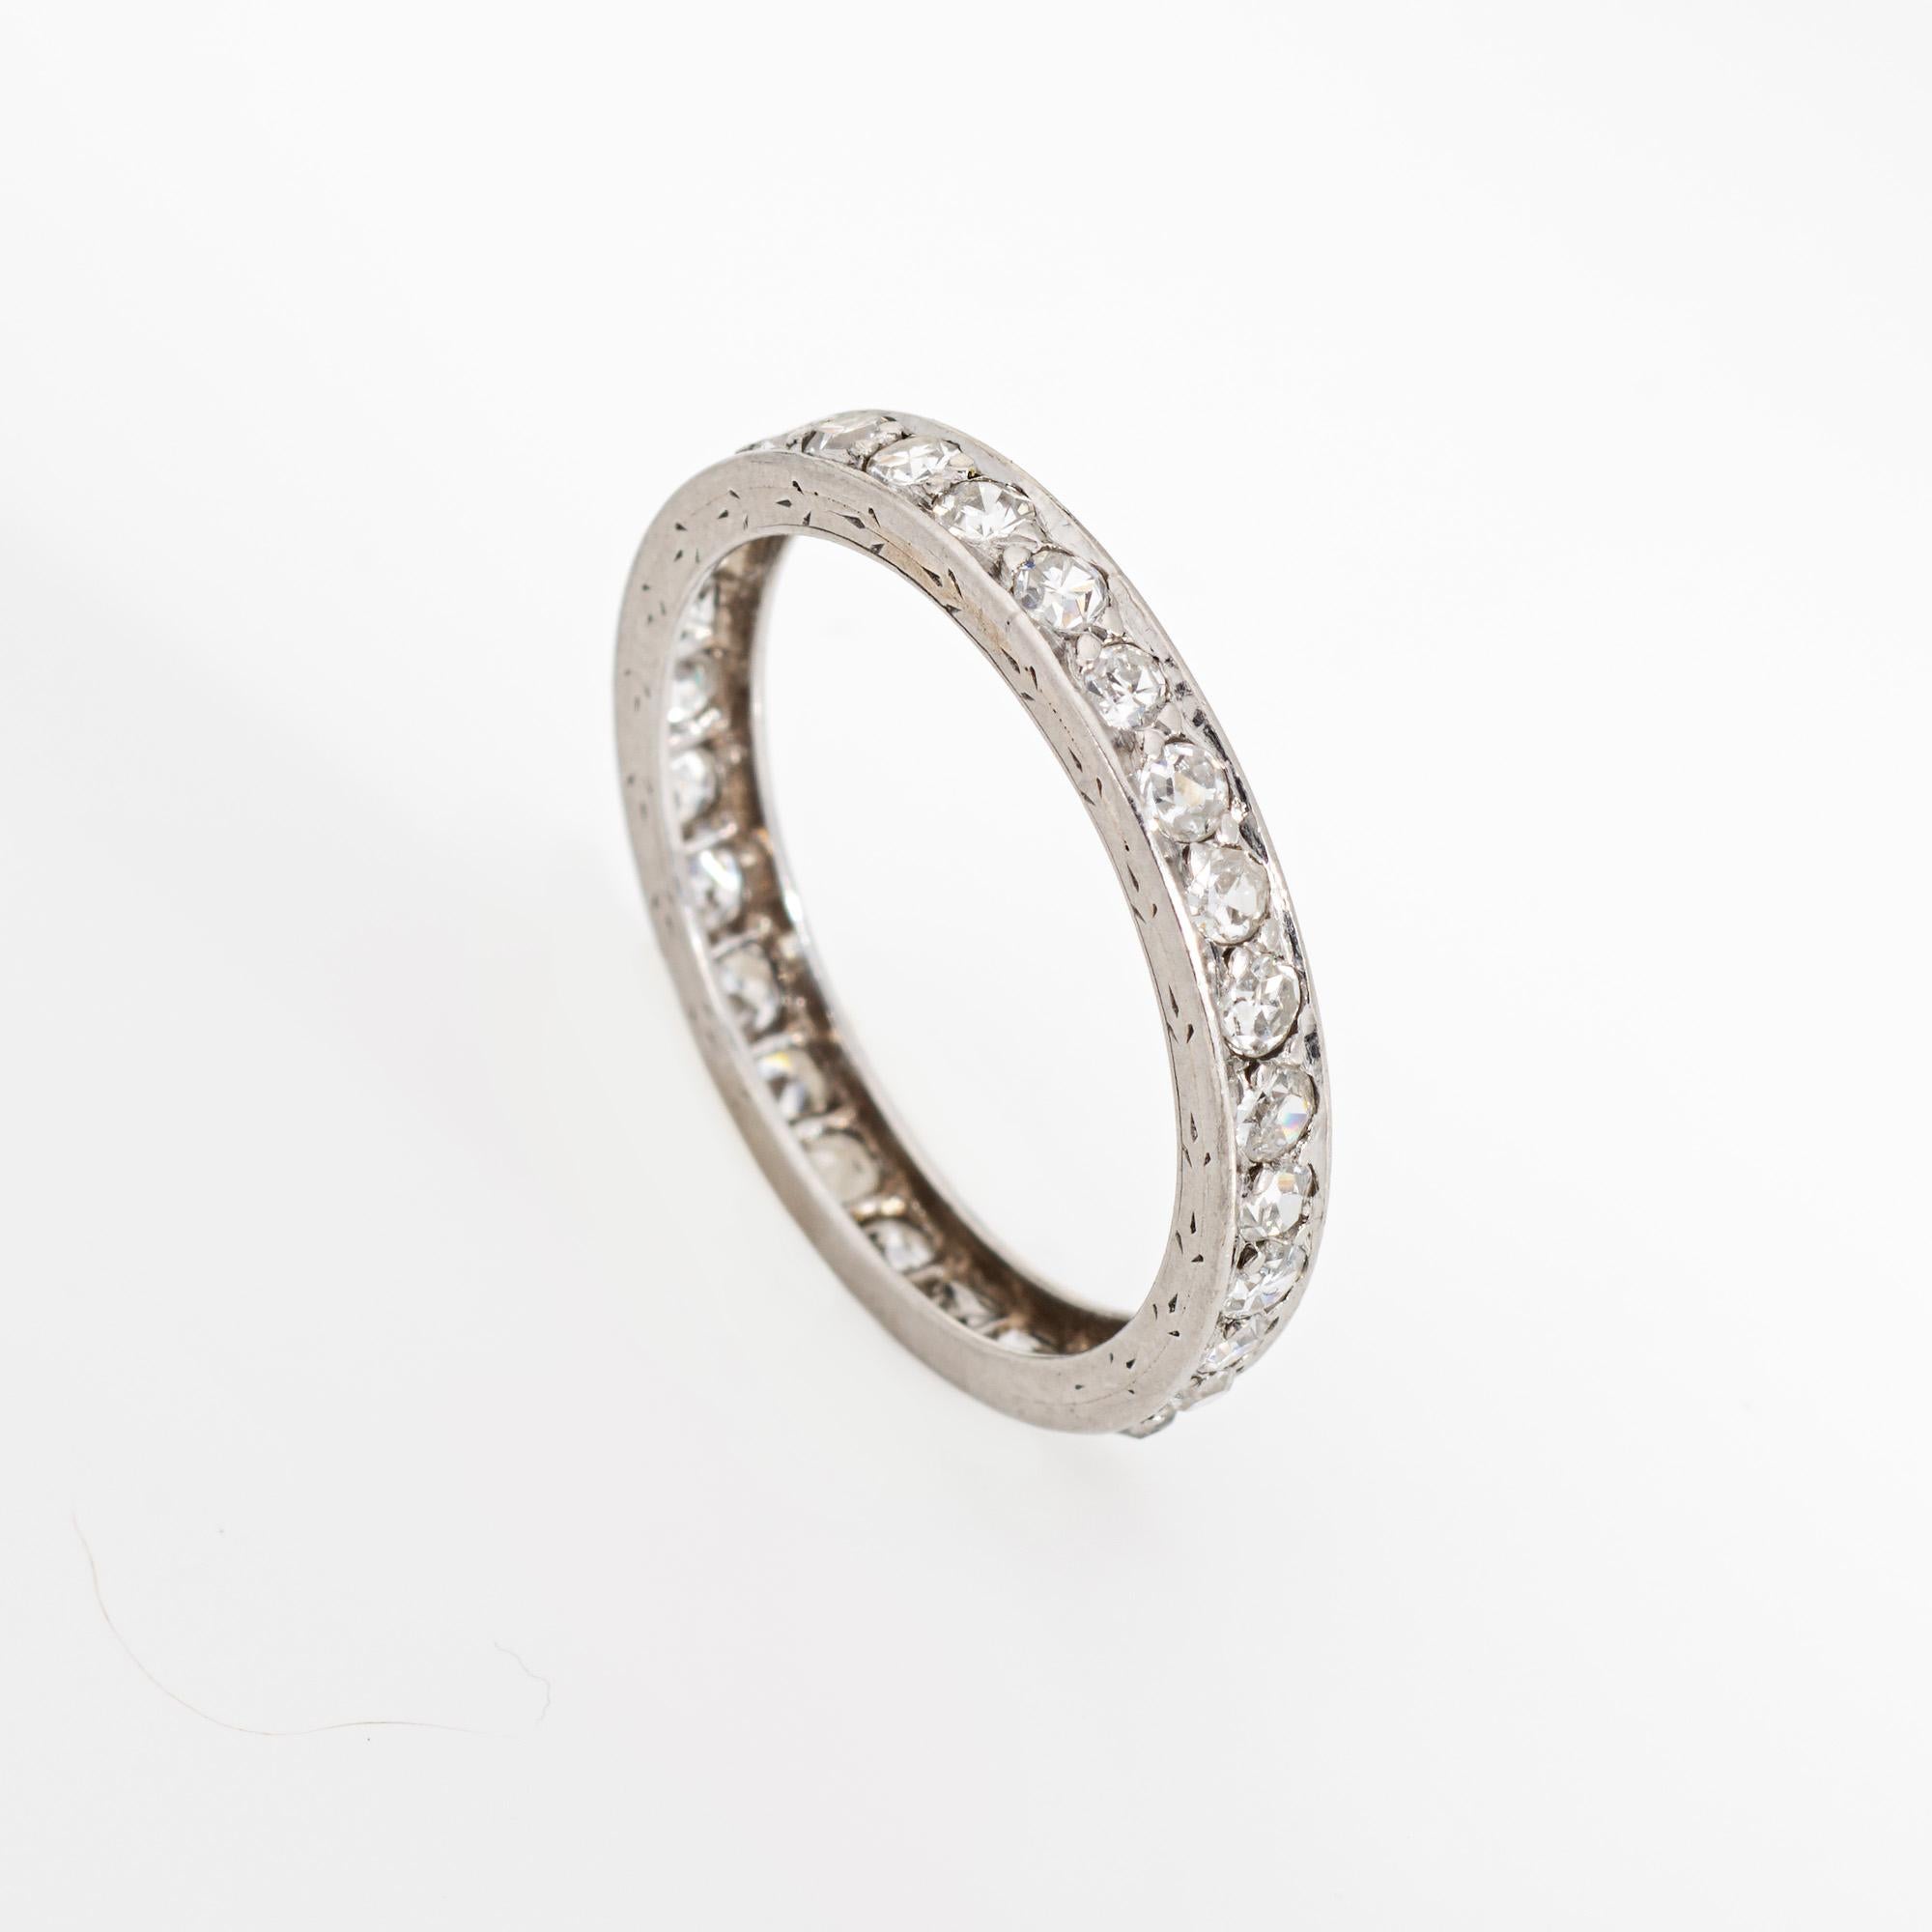 Eleganter Ring aus der Art-Déco-Ära (ca. 1920er bis 1930er Jahre), gefertigt aus Platin 900. 

Die geschliffenen Diamanten haben insgesamt 0,42 Karat (geschätzte Farbe H-I und Reinheit SI2-I2).

Der Ring versprüht Vintage-Charme und eignet sich